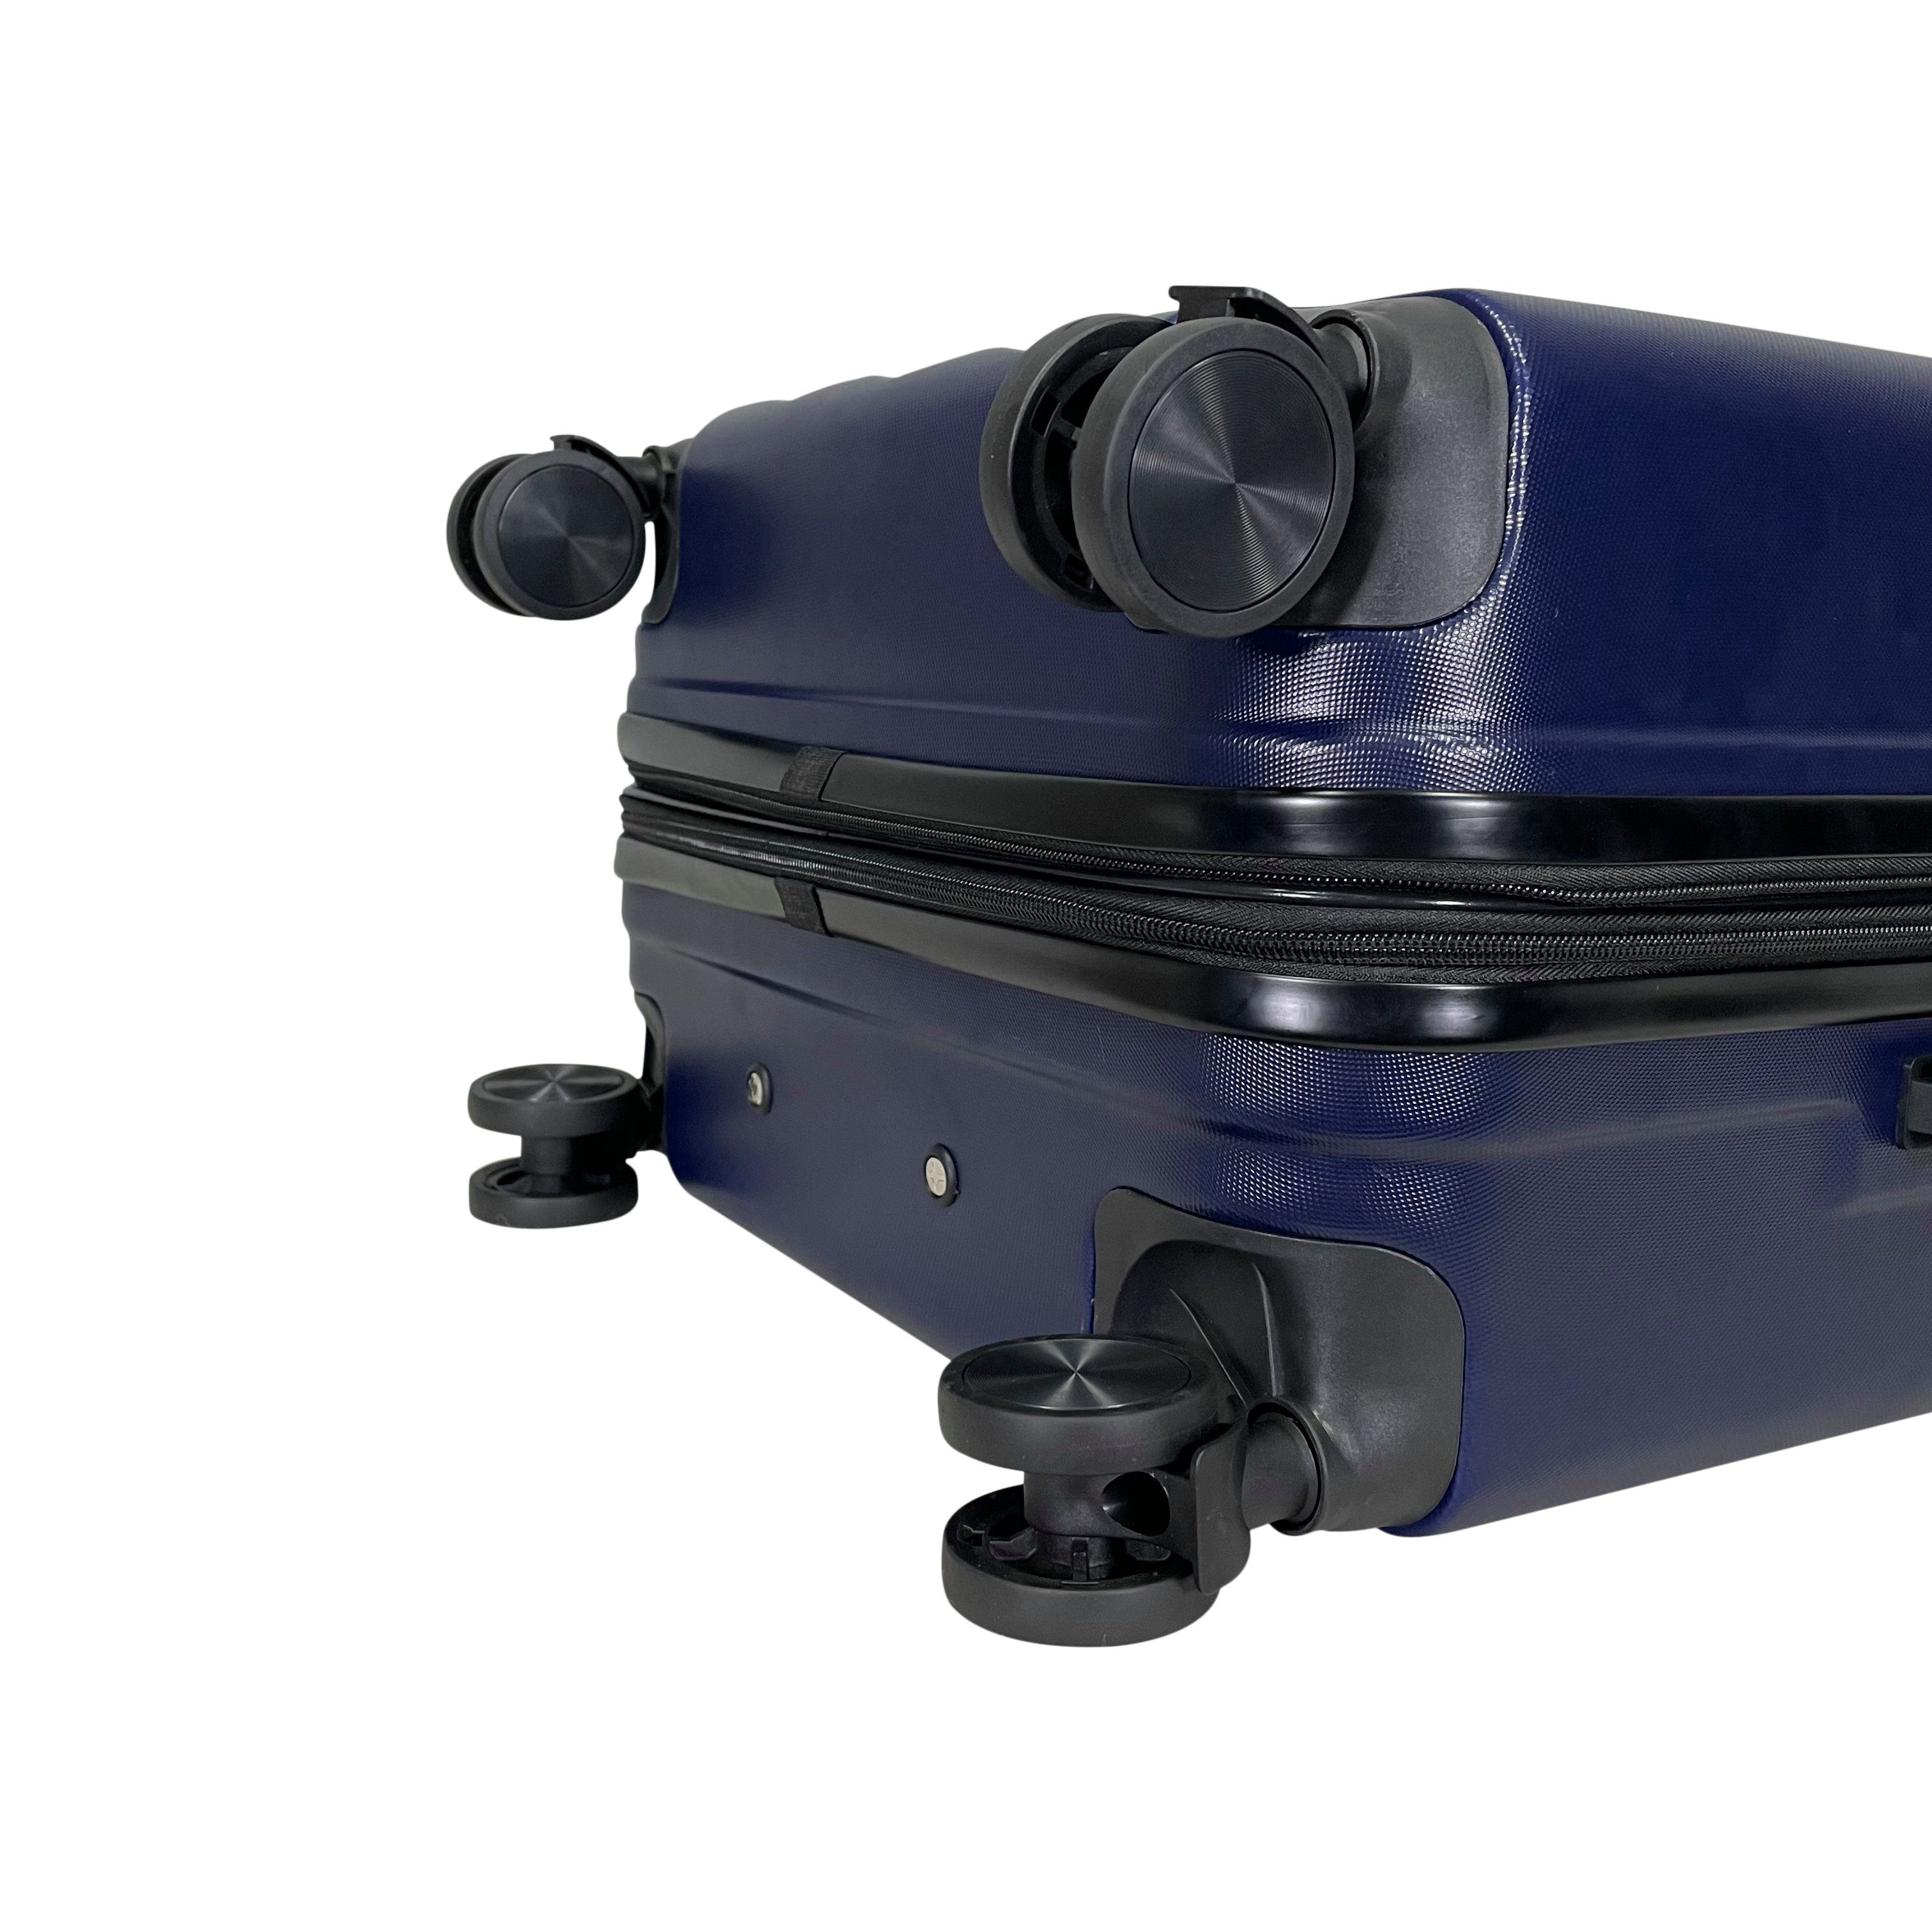 MTB ABS (Handgepäck-Mittel-Groß-Set) erweiterbar Hartschalen Koffer Reisekoffer Dunkelblau